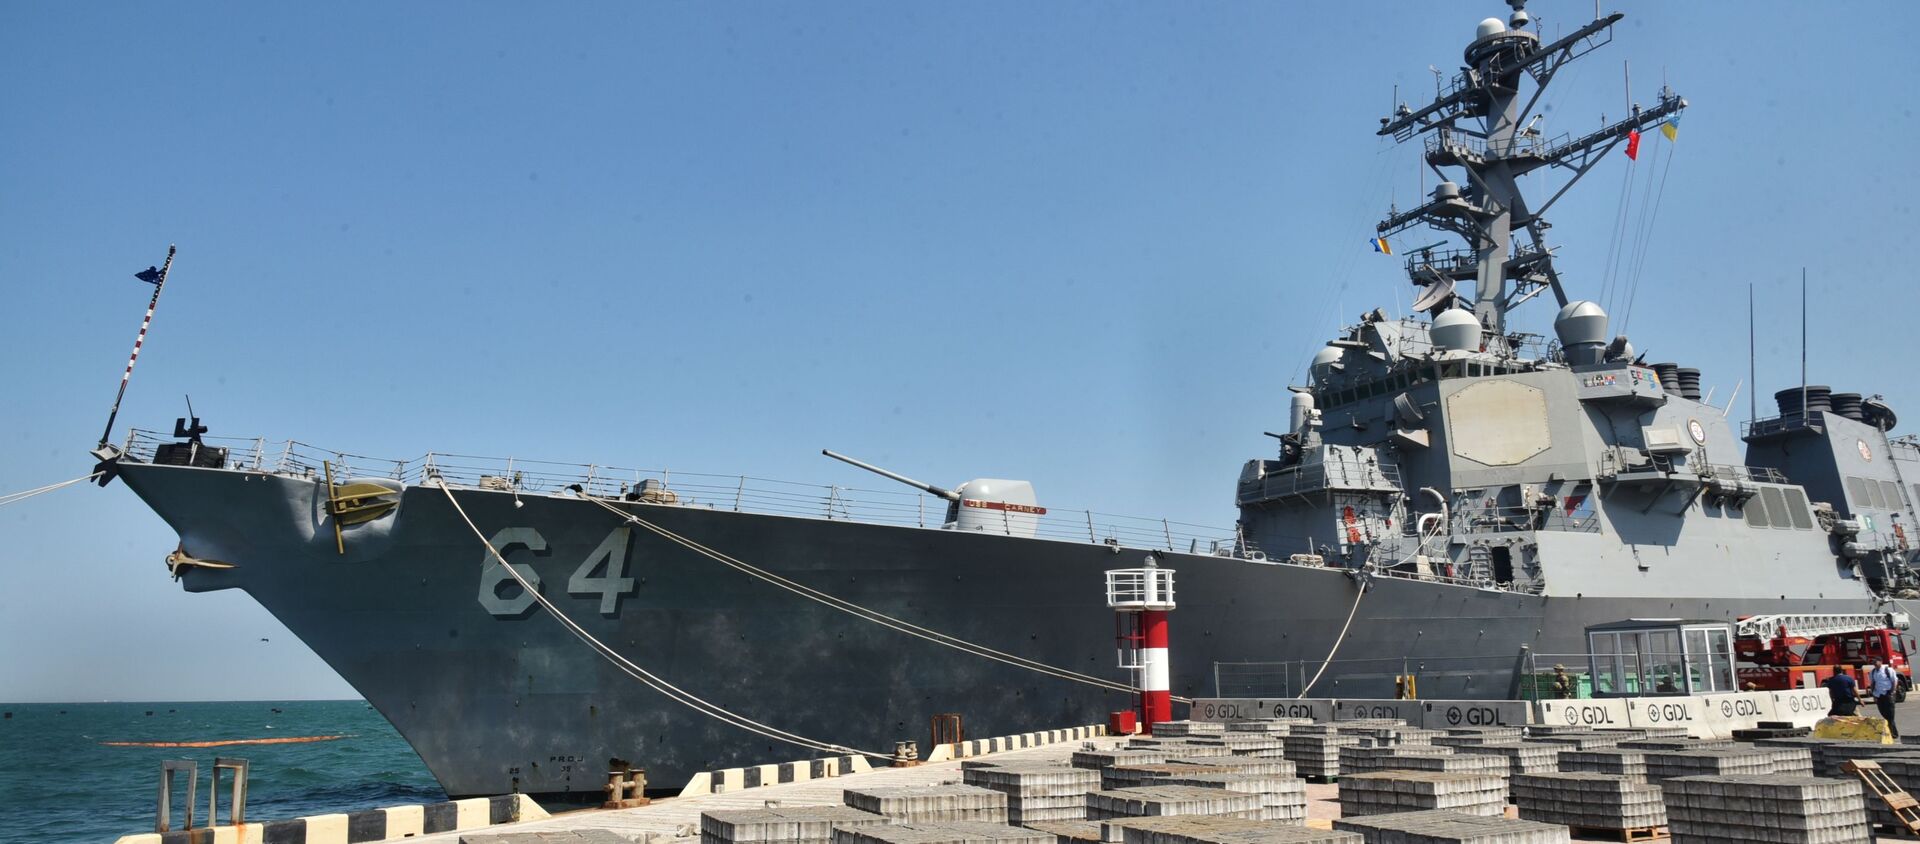 Эсминец ВМС США Carney в морском порту Одессы - Sputnik Latvija, 1920, 16.04.2021